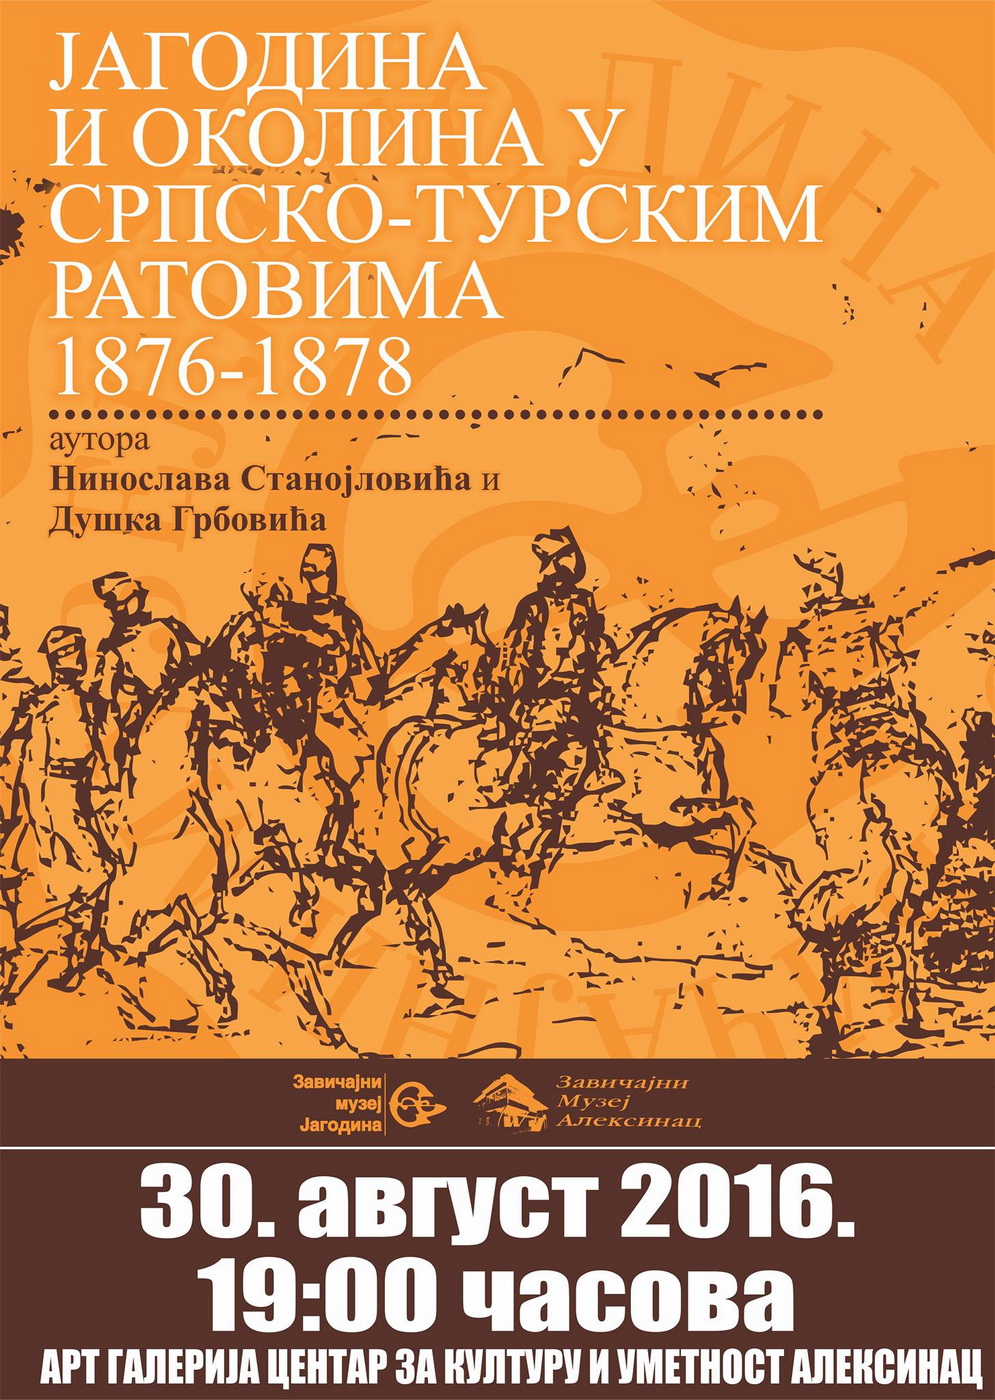 Изложба <br>Јагодина и околина <br>у српско-турским ратовима 1876-1878.